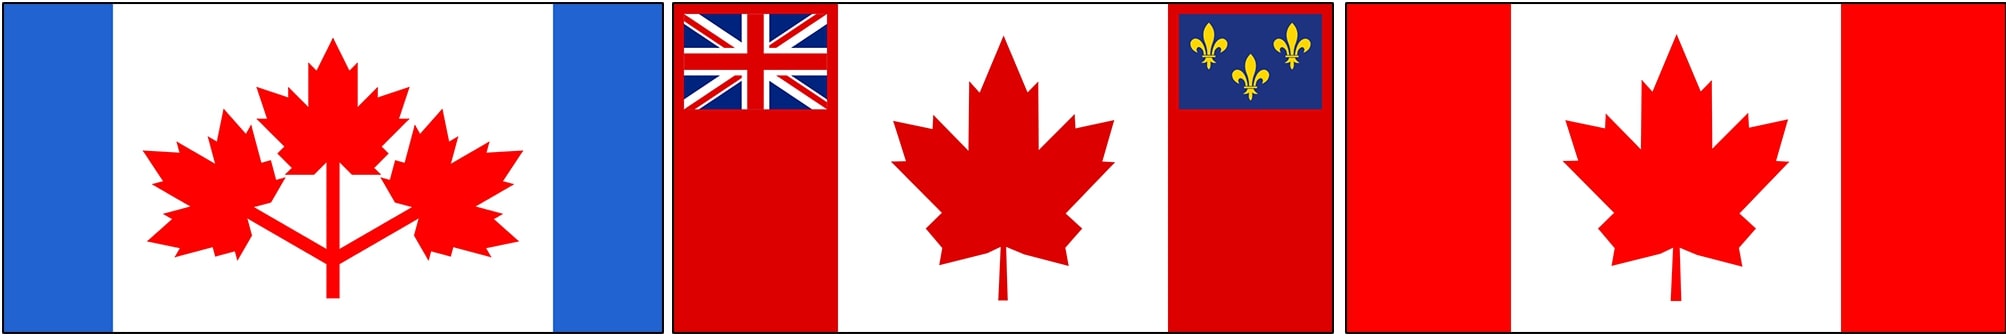 Histoire du drapeau canadien